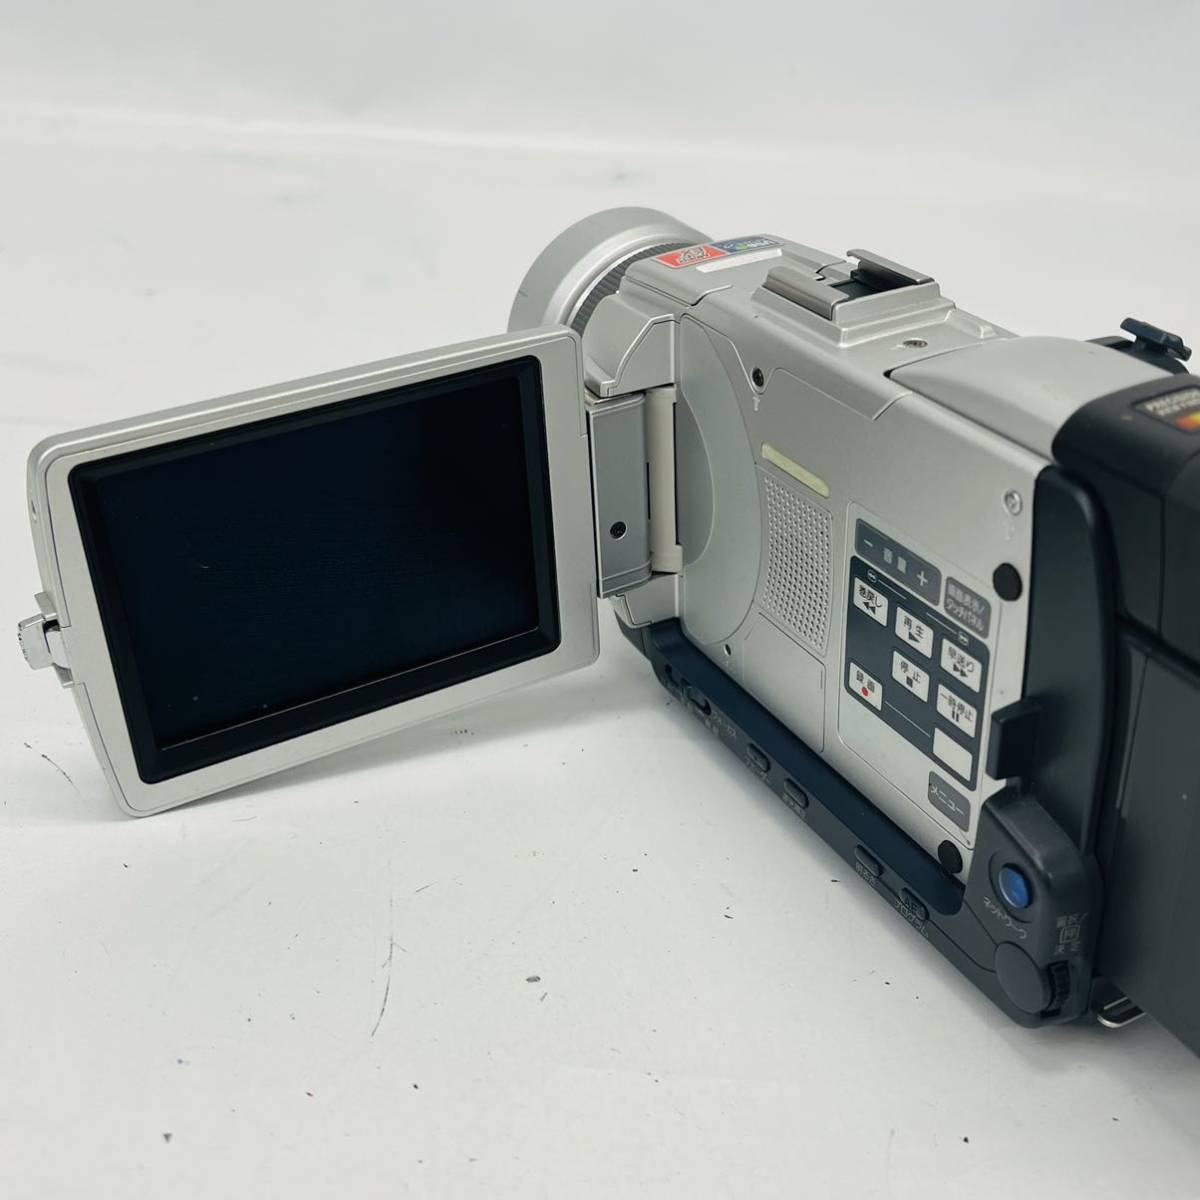 うのにもお得な SONY ソニー DCR-TRV110K H グレー Digital8対応デジタルハンディカム ビデオカメラ ナイトショット機能 